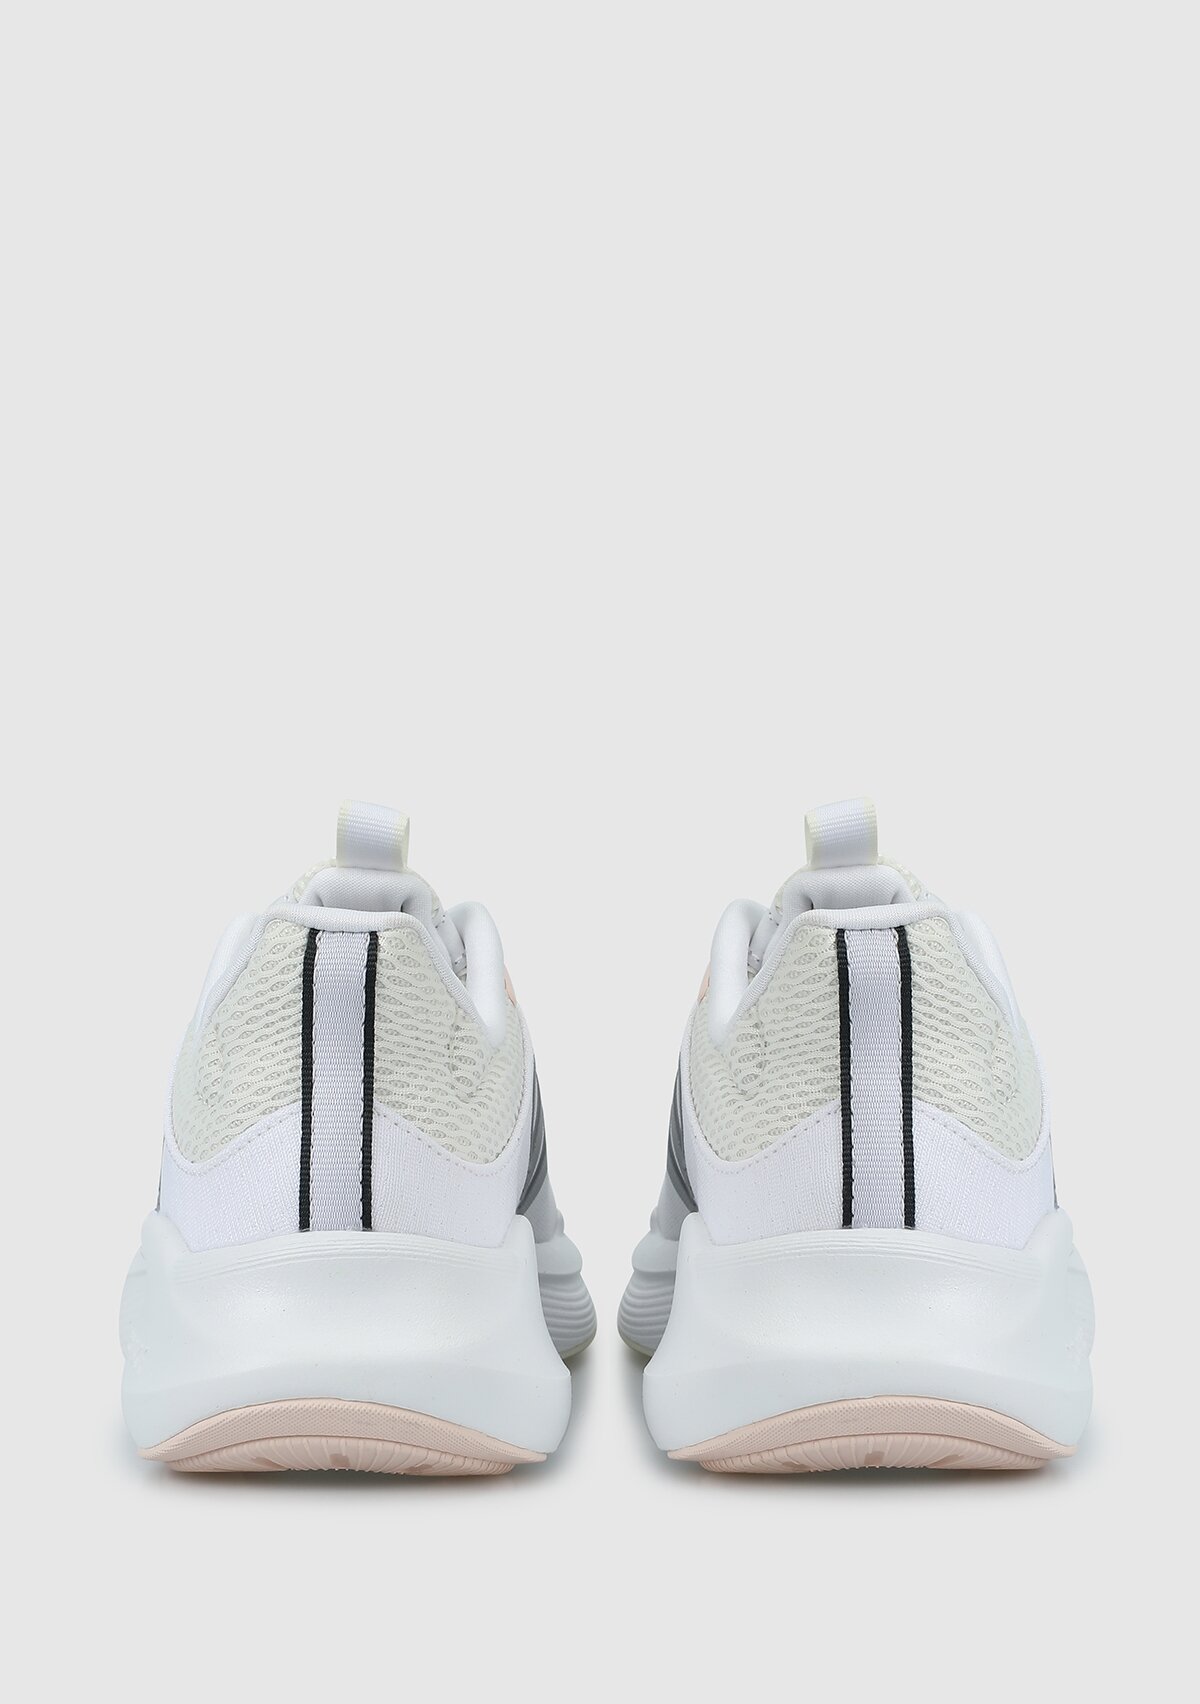 adidas Alphaedge +Beyaz kadın koşu Ayakkabısı ıf7283